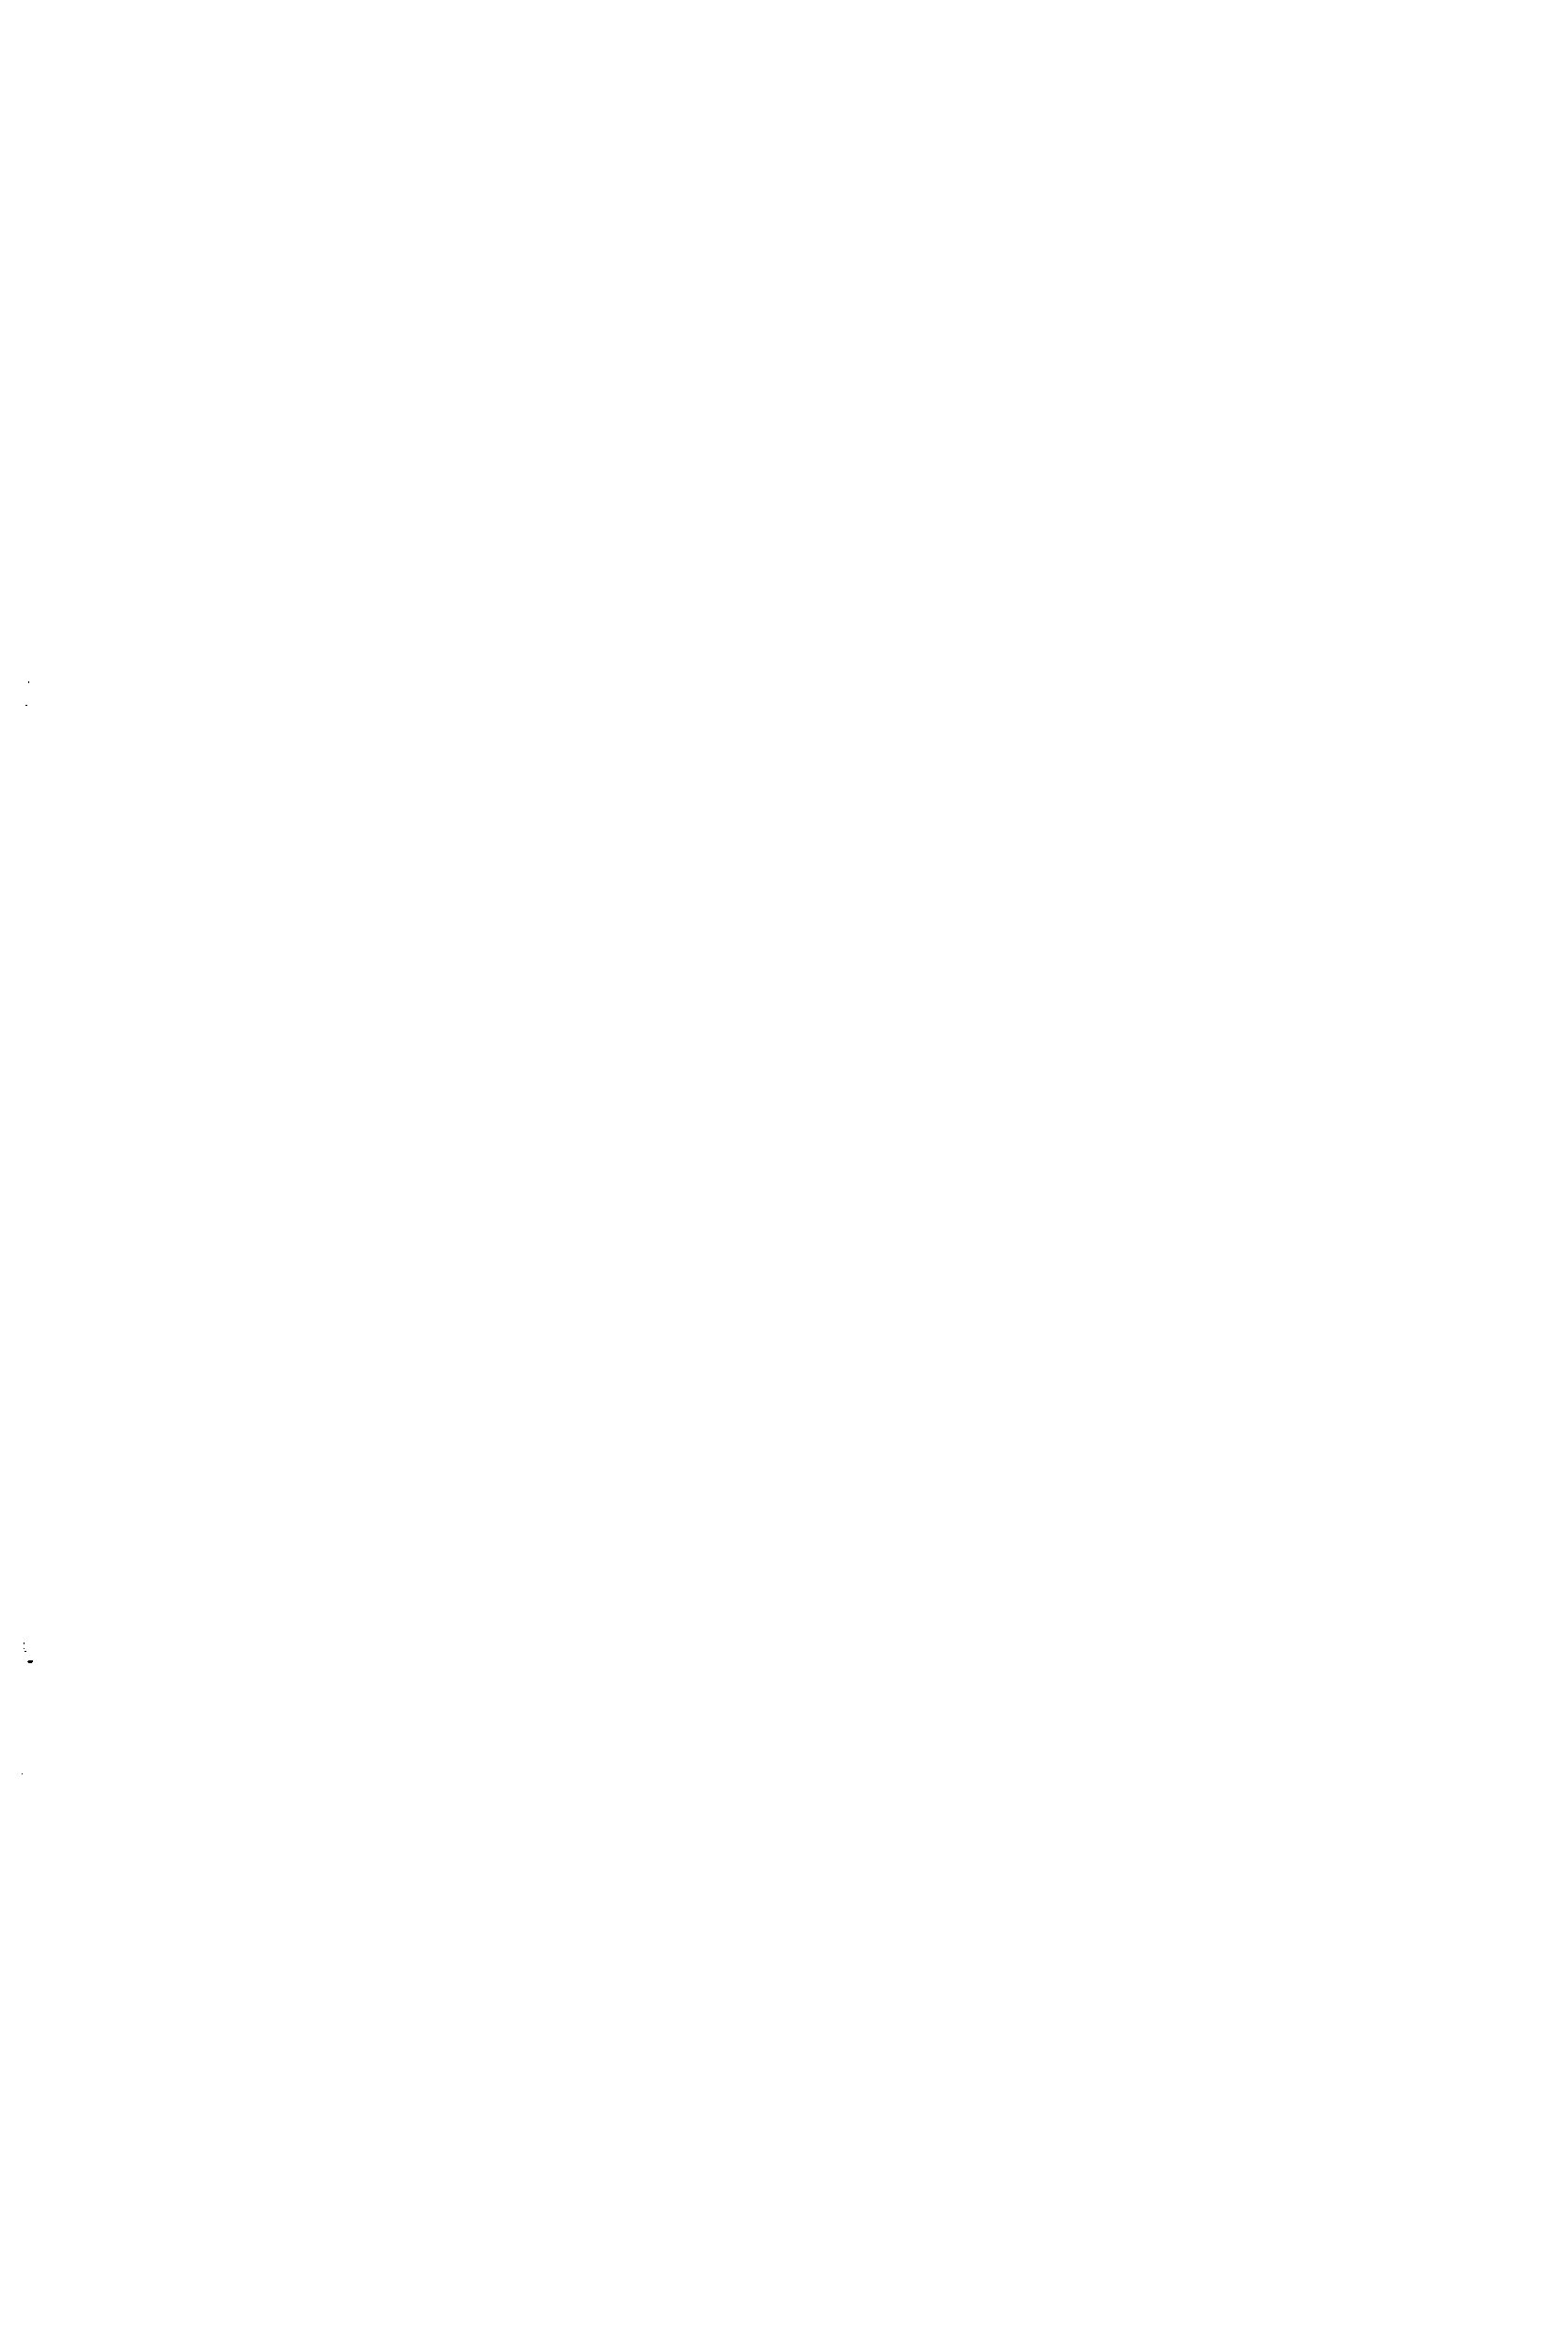 Рис. 2. Типы структур декоративных металлических покрытий на пластмассах 1,11 — Си—N1 — Сг III, IV—N1 — Сг 1 —Си, N1, 2п или Зп I—пластмассовая основа 2—слой блестящей меди 3—слой матовой меди 4—слой металла, нанесенного химически 5—слой блестящего никеля в —слой полублестящего никеля 7—слой матового никеля 8 — слой блестящего хрома 9—конверсионное покрытие (хроматное, окисиое, патина н т. п.) 70—слой блестящего или матового металла.
